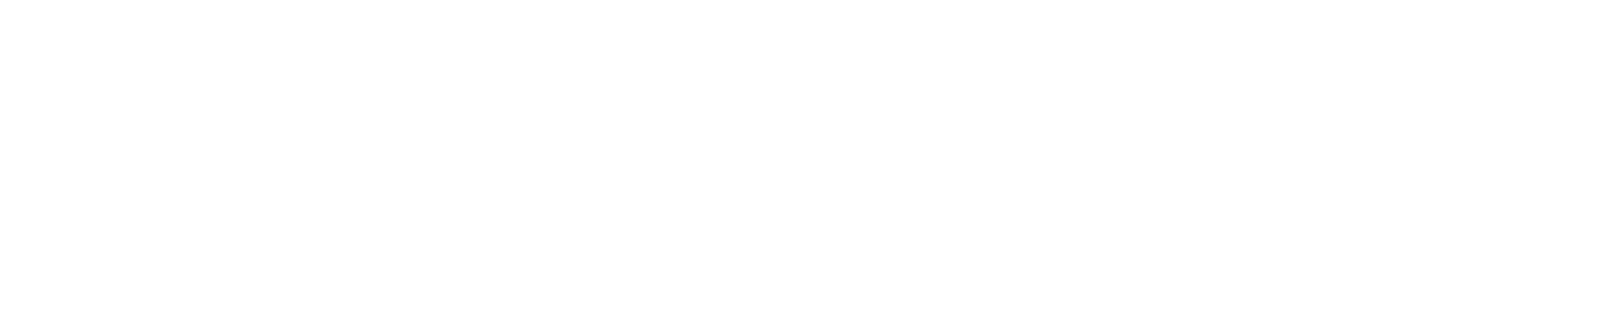 Best Western Glo Logo